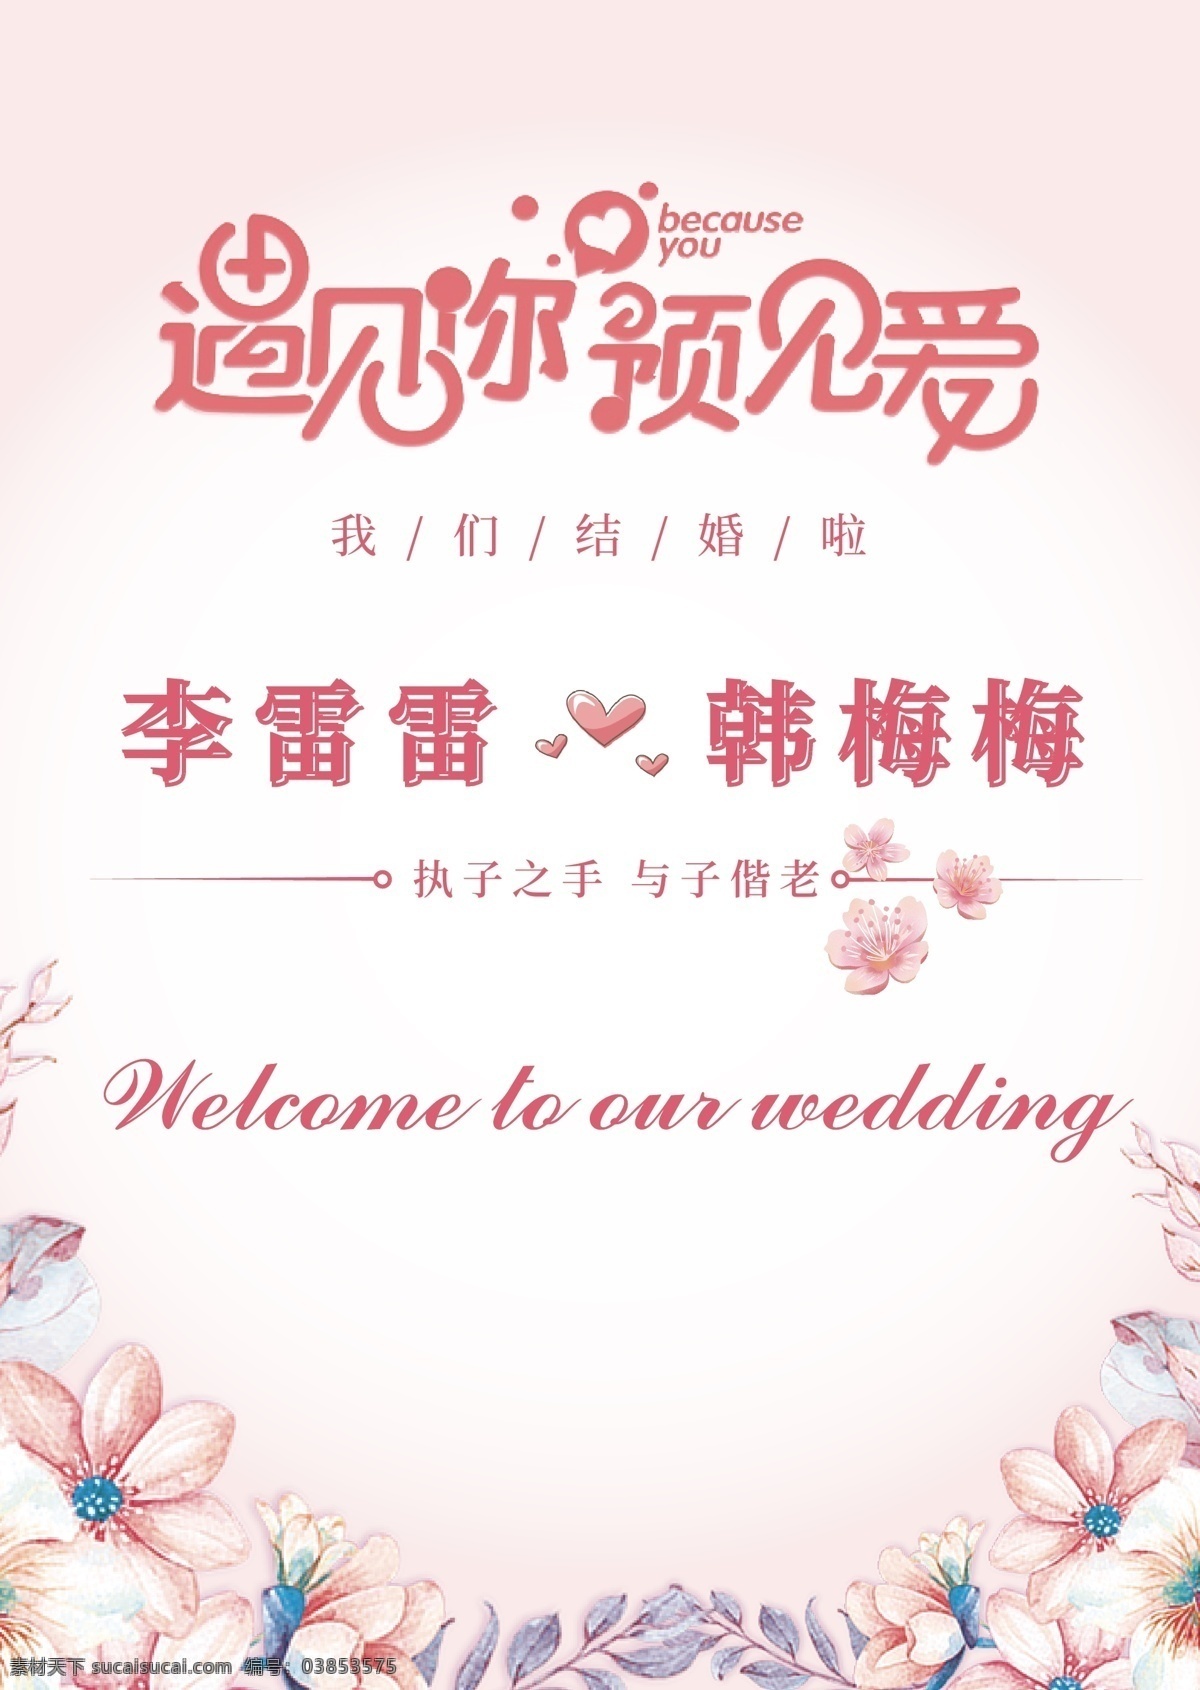 婚庆宣传图 结婚 婚庆 520 表白 求婚 祝福